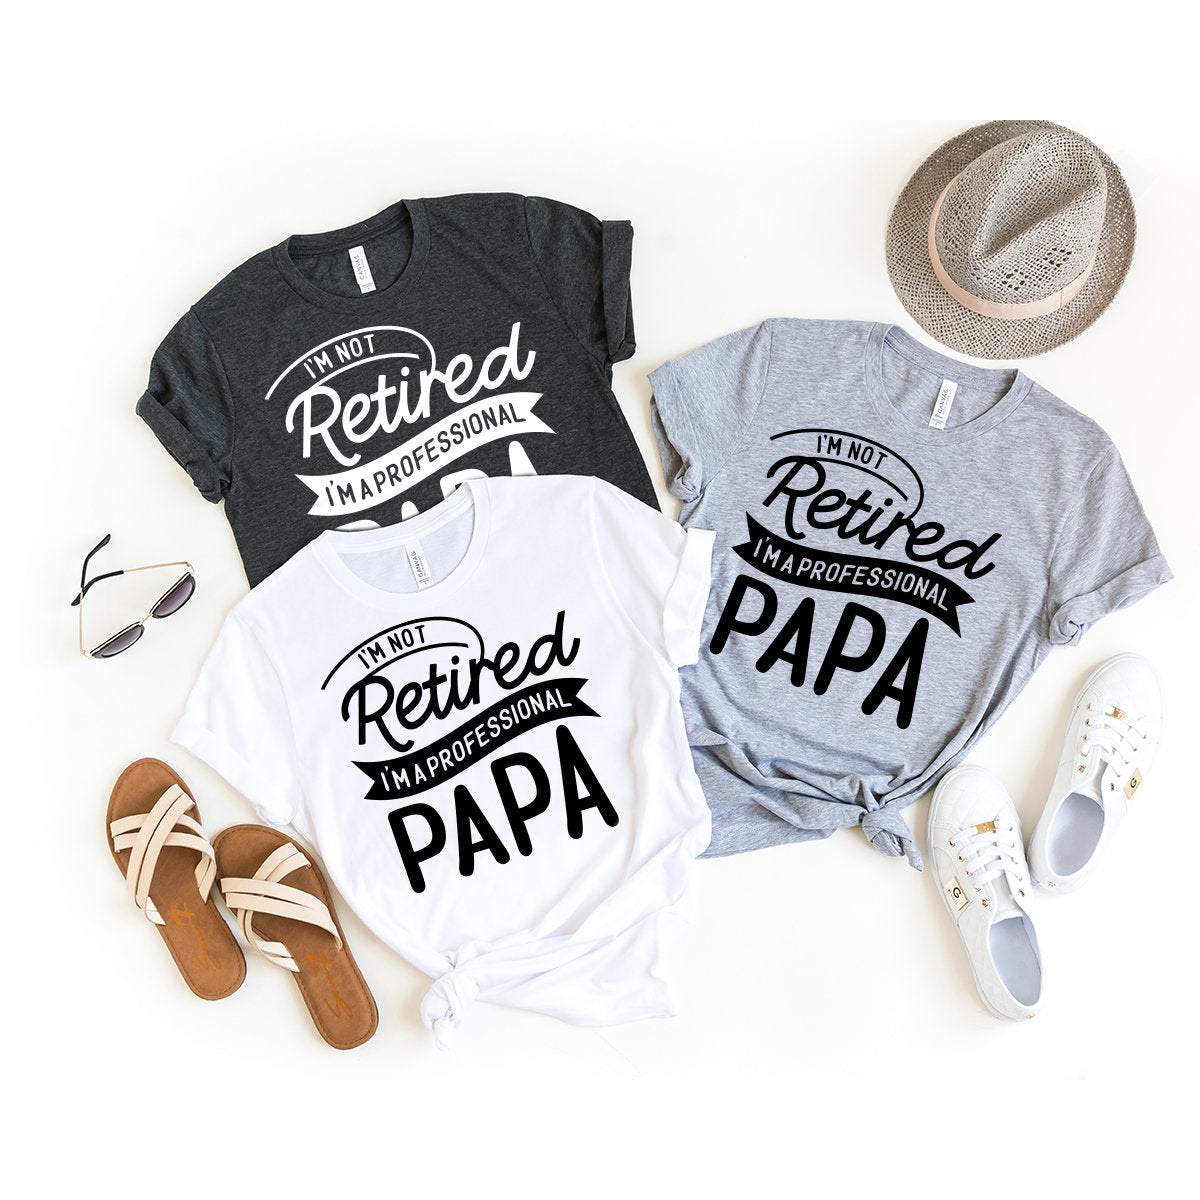 Retired Papa Shirt, Papa T-Shirt, I'm Not Retired I'm Professional Papa Shirt, Grandpa Shirt, Gift For Papa, Grandpa Gift, Funny Grandpa Tee - Fastdeliverytees.com